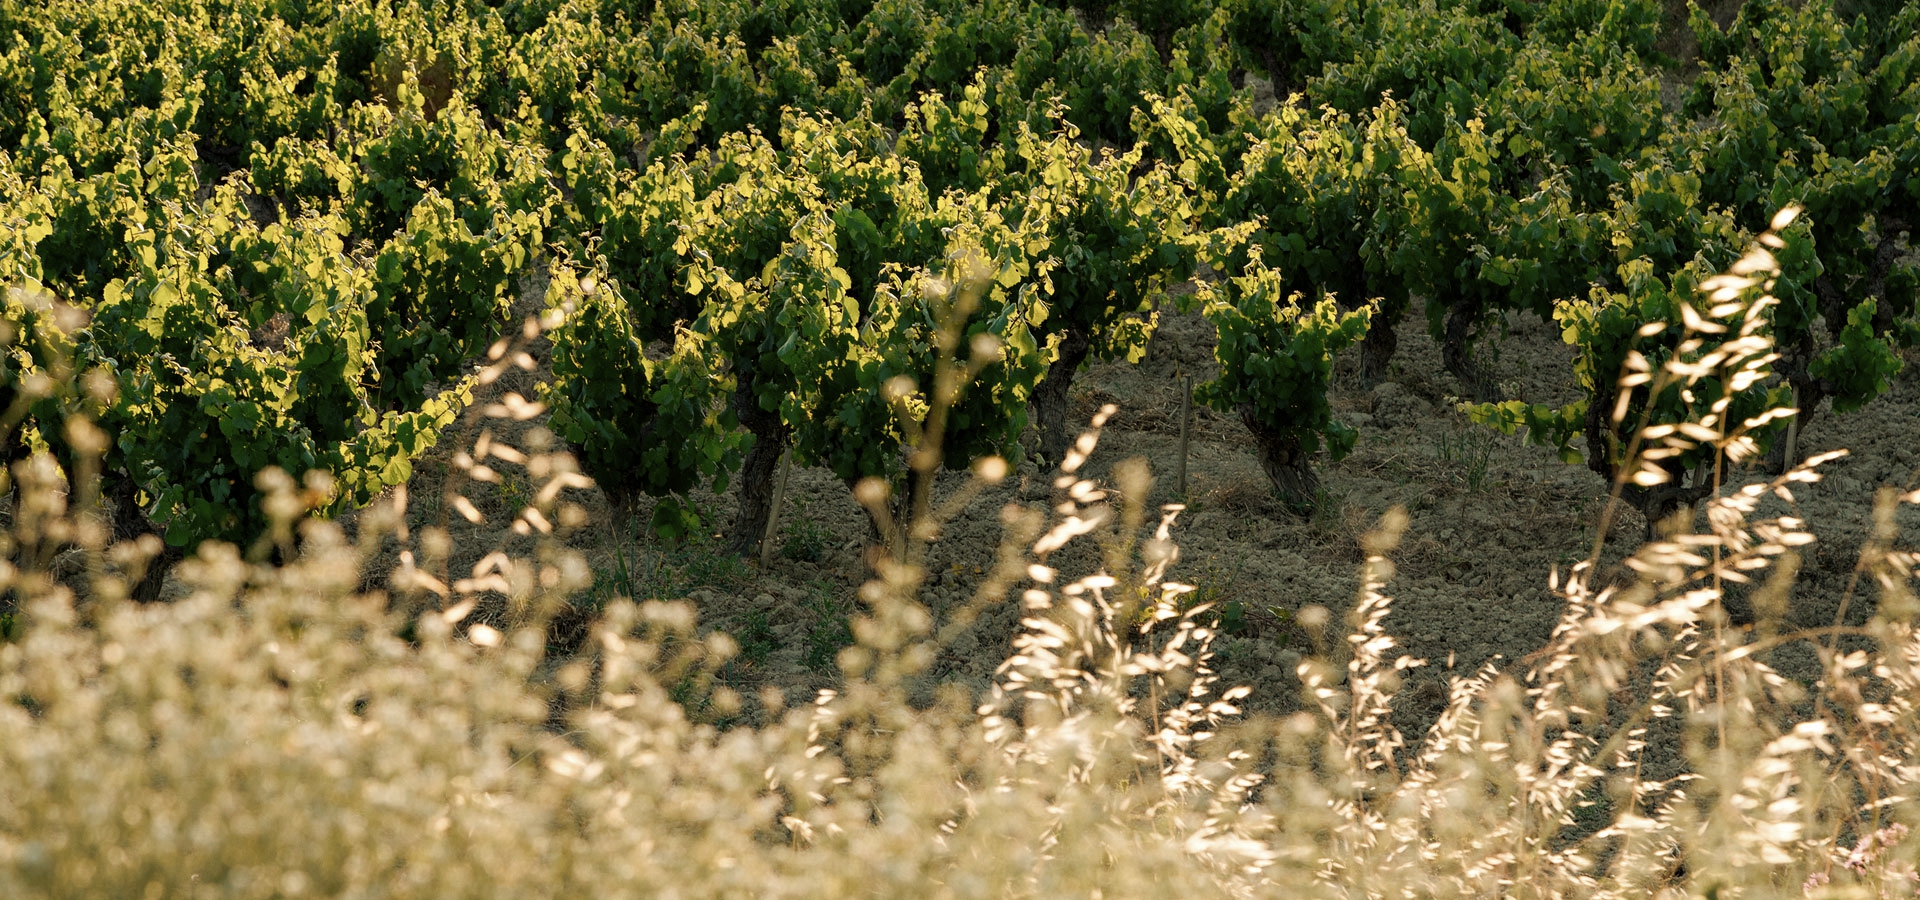 Pioners en viticultura ecològica i cultiu biodinàmic elaborant vins i caves catalans.